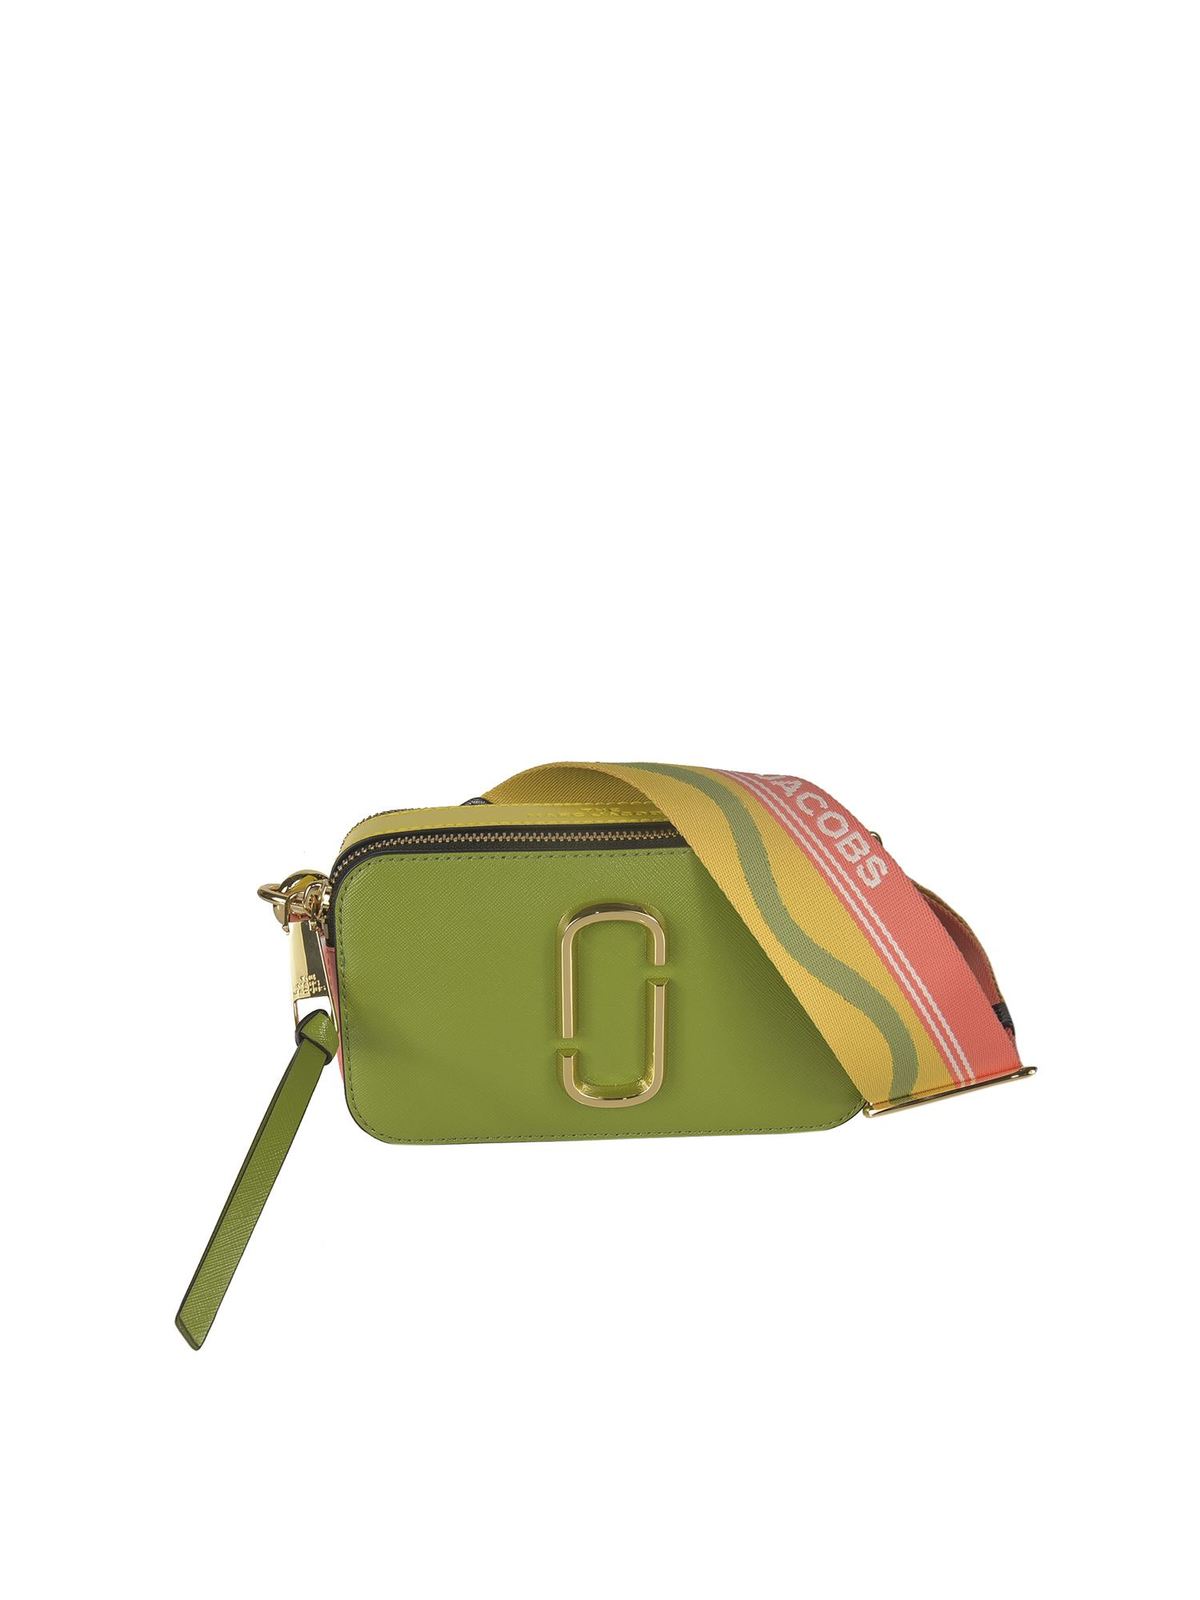 The Snapshot bag in Peridot Multi color